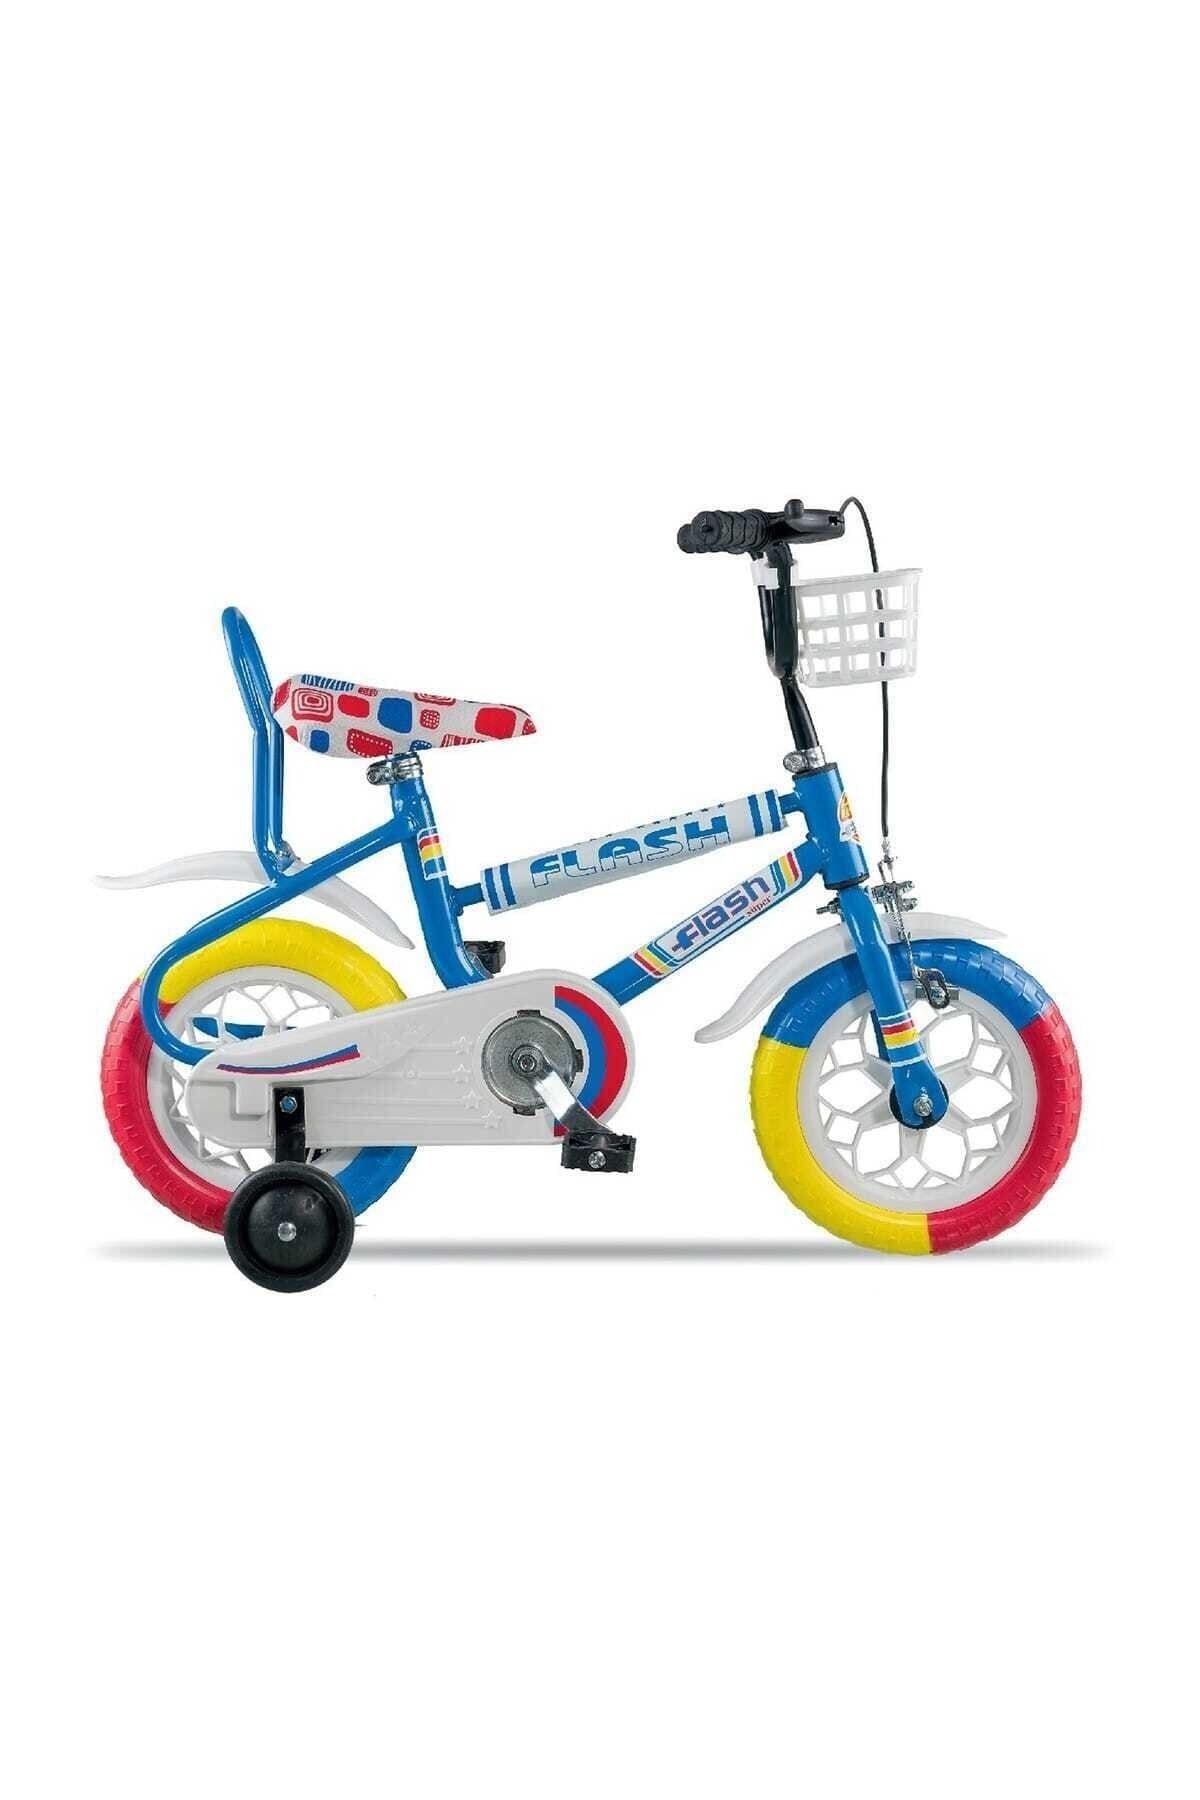 Tunca Flash 12 Jant Çocuk Bisikleti 102 (Renkli Tekerlek) Mavi